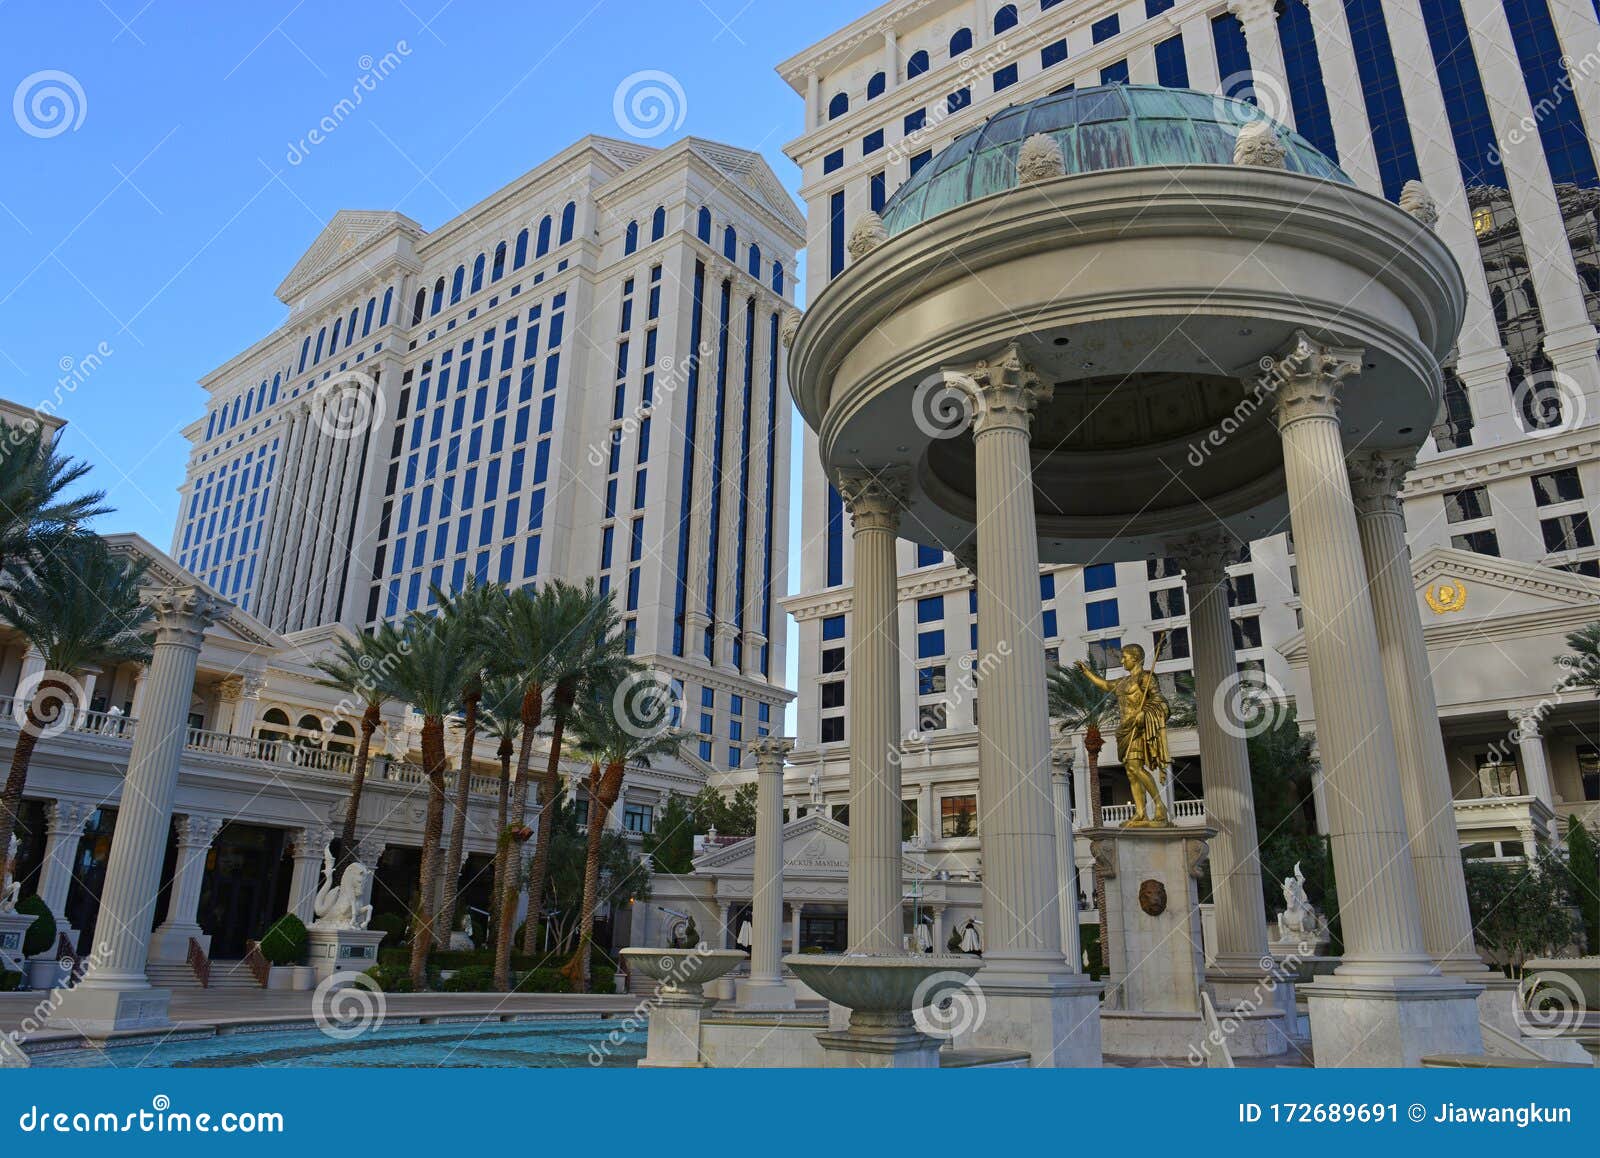 Caesar's Palace, Las Vegas, Nevada, USA